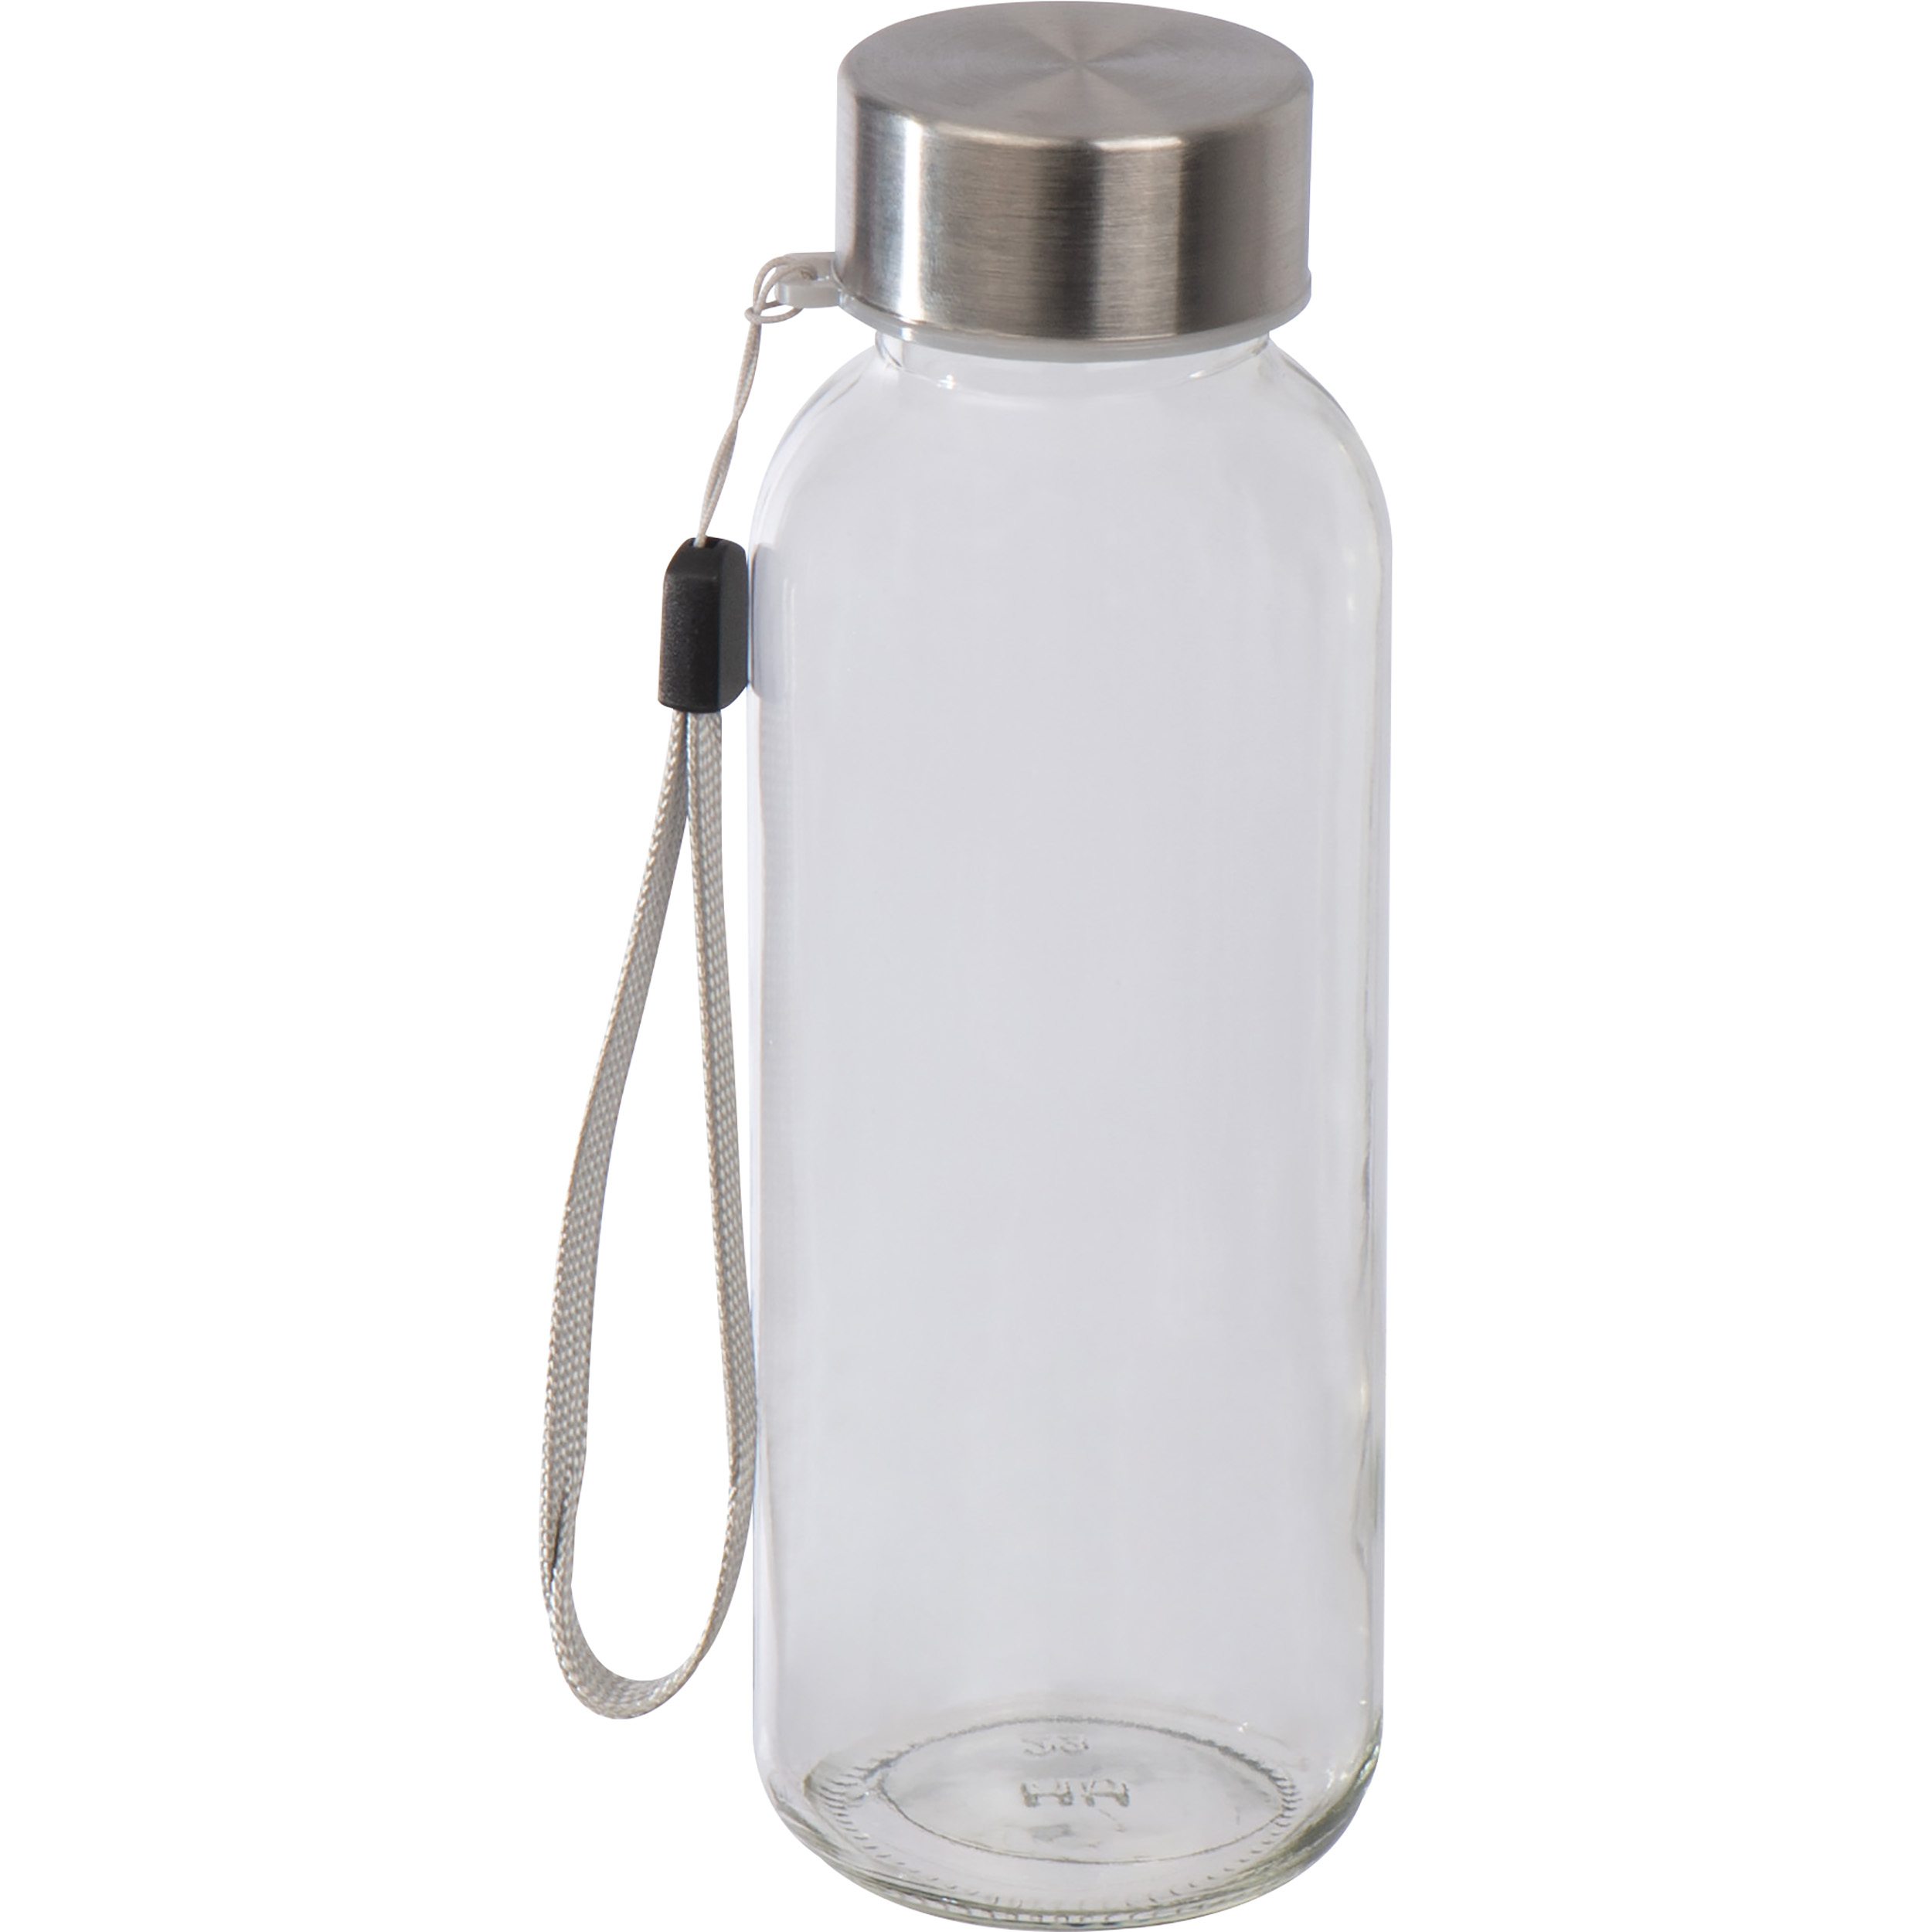 Trinkflasche aus Glas mit Neoprenüberzug, 300ml